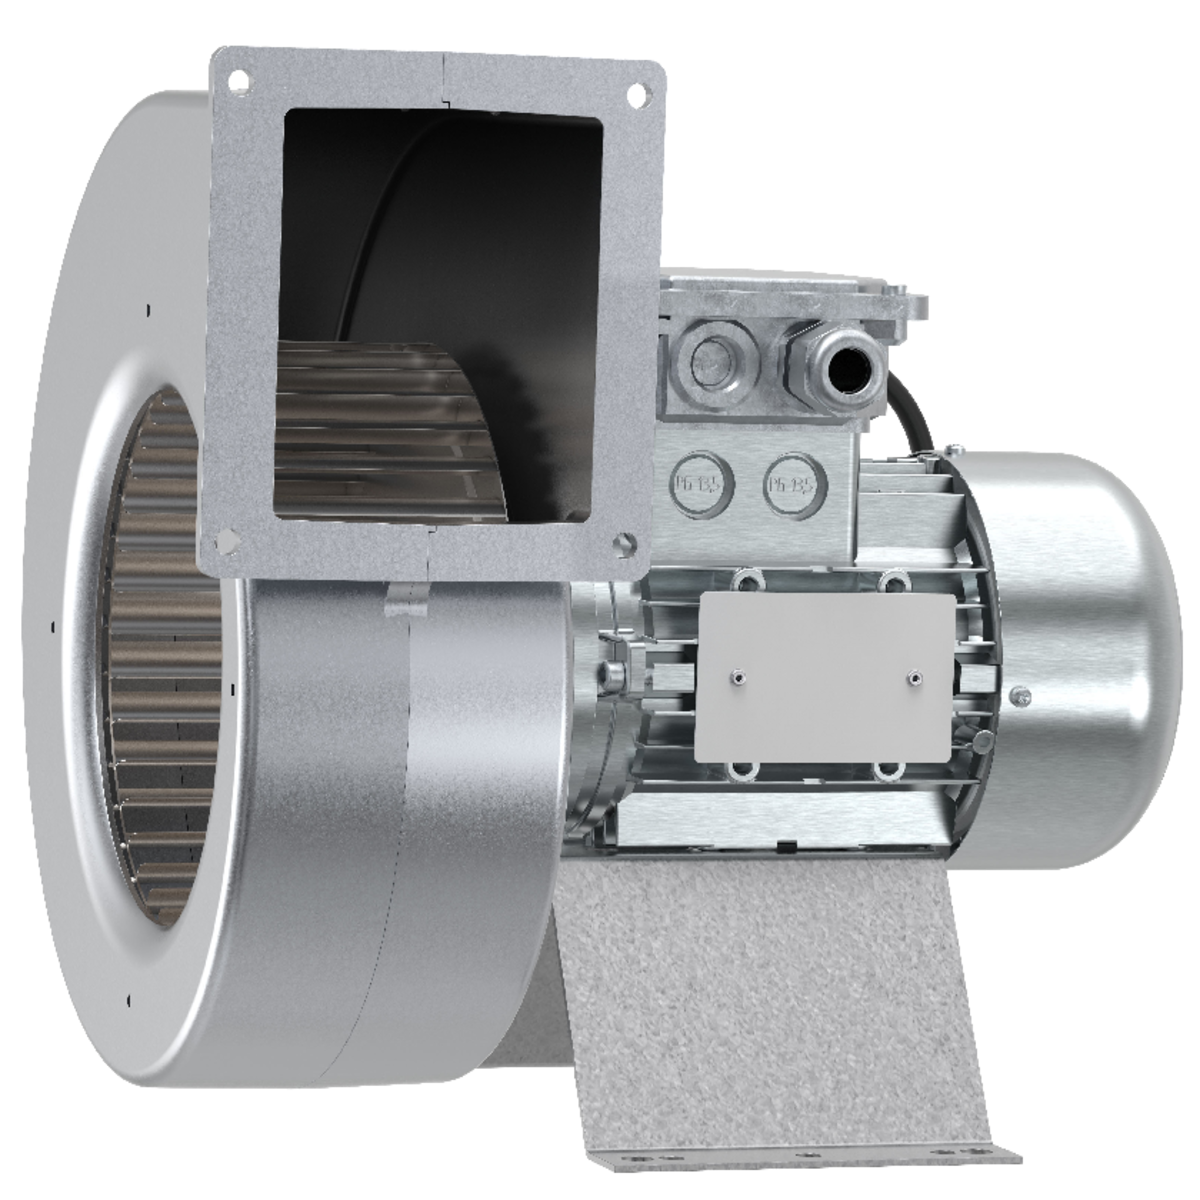 EX - Išcentriniai ventiliatoriai - Ventiliatoriai - Produktai - Systemair